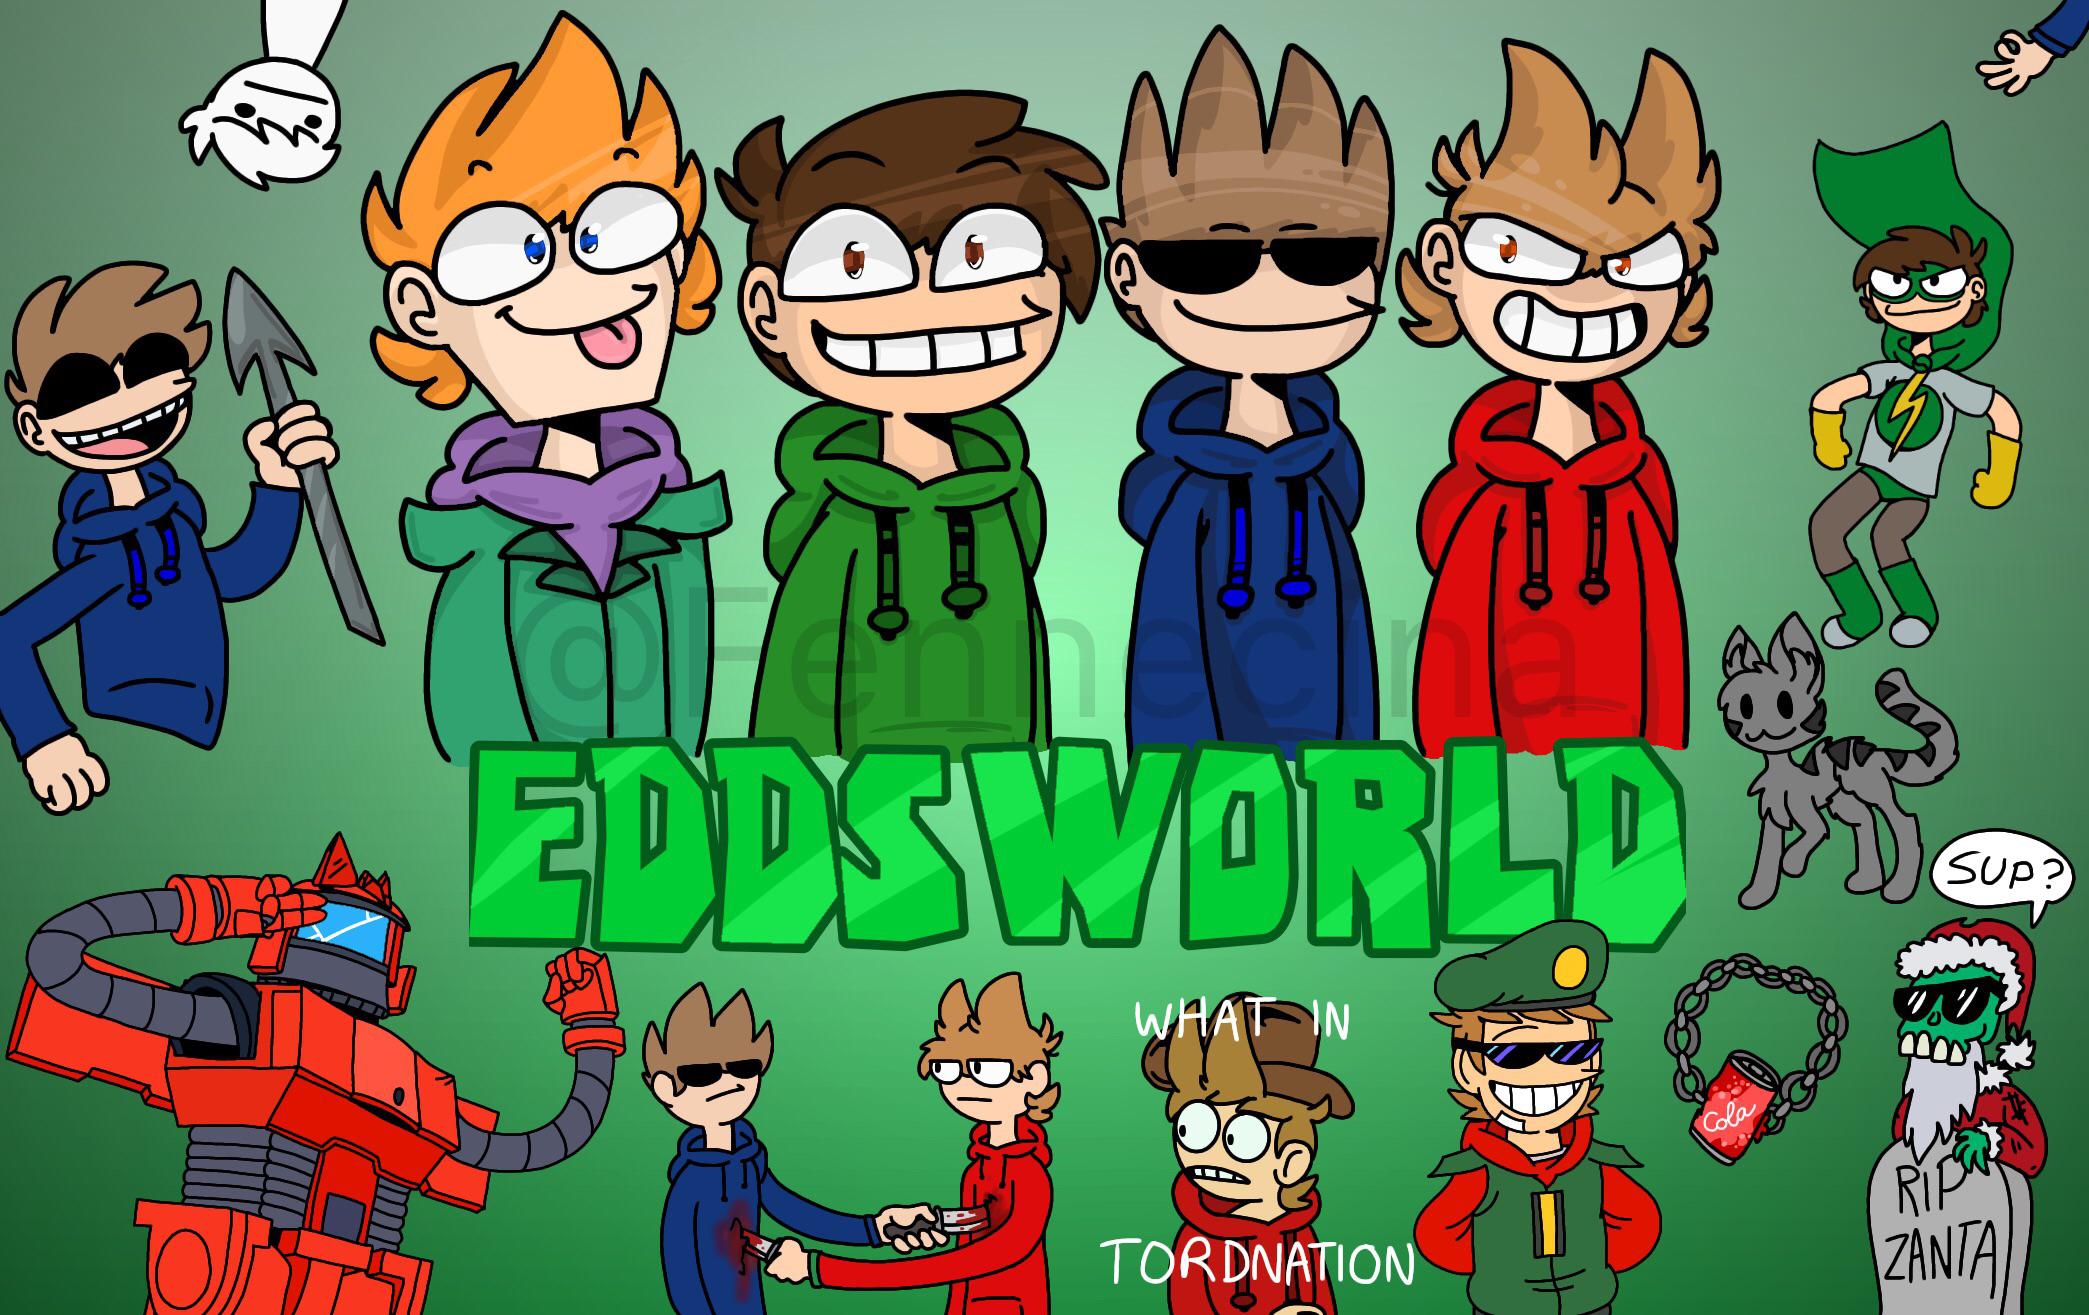 Eddsworld Backgrounds